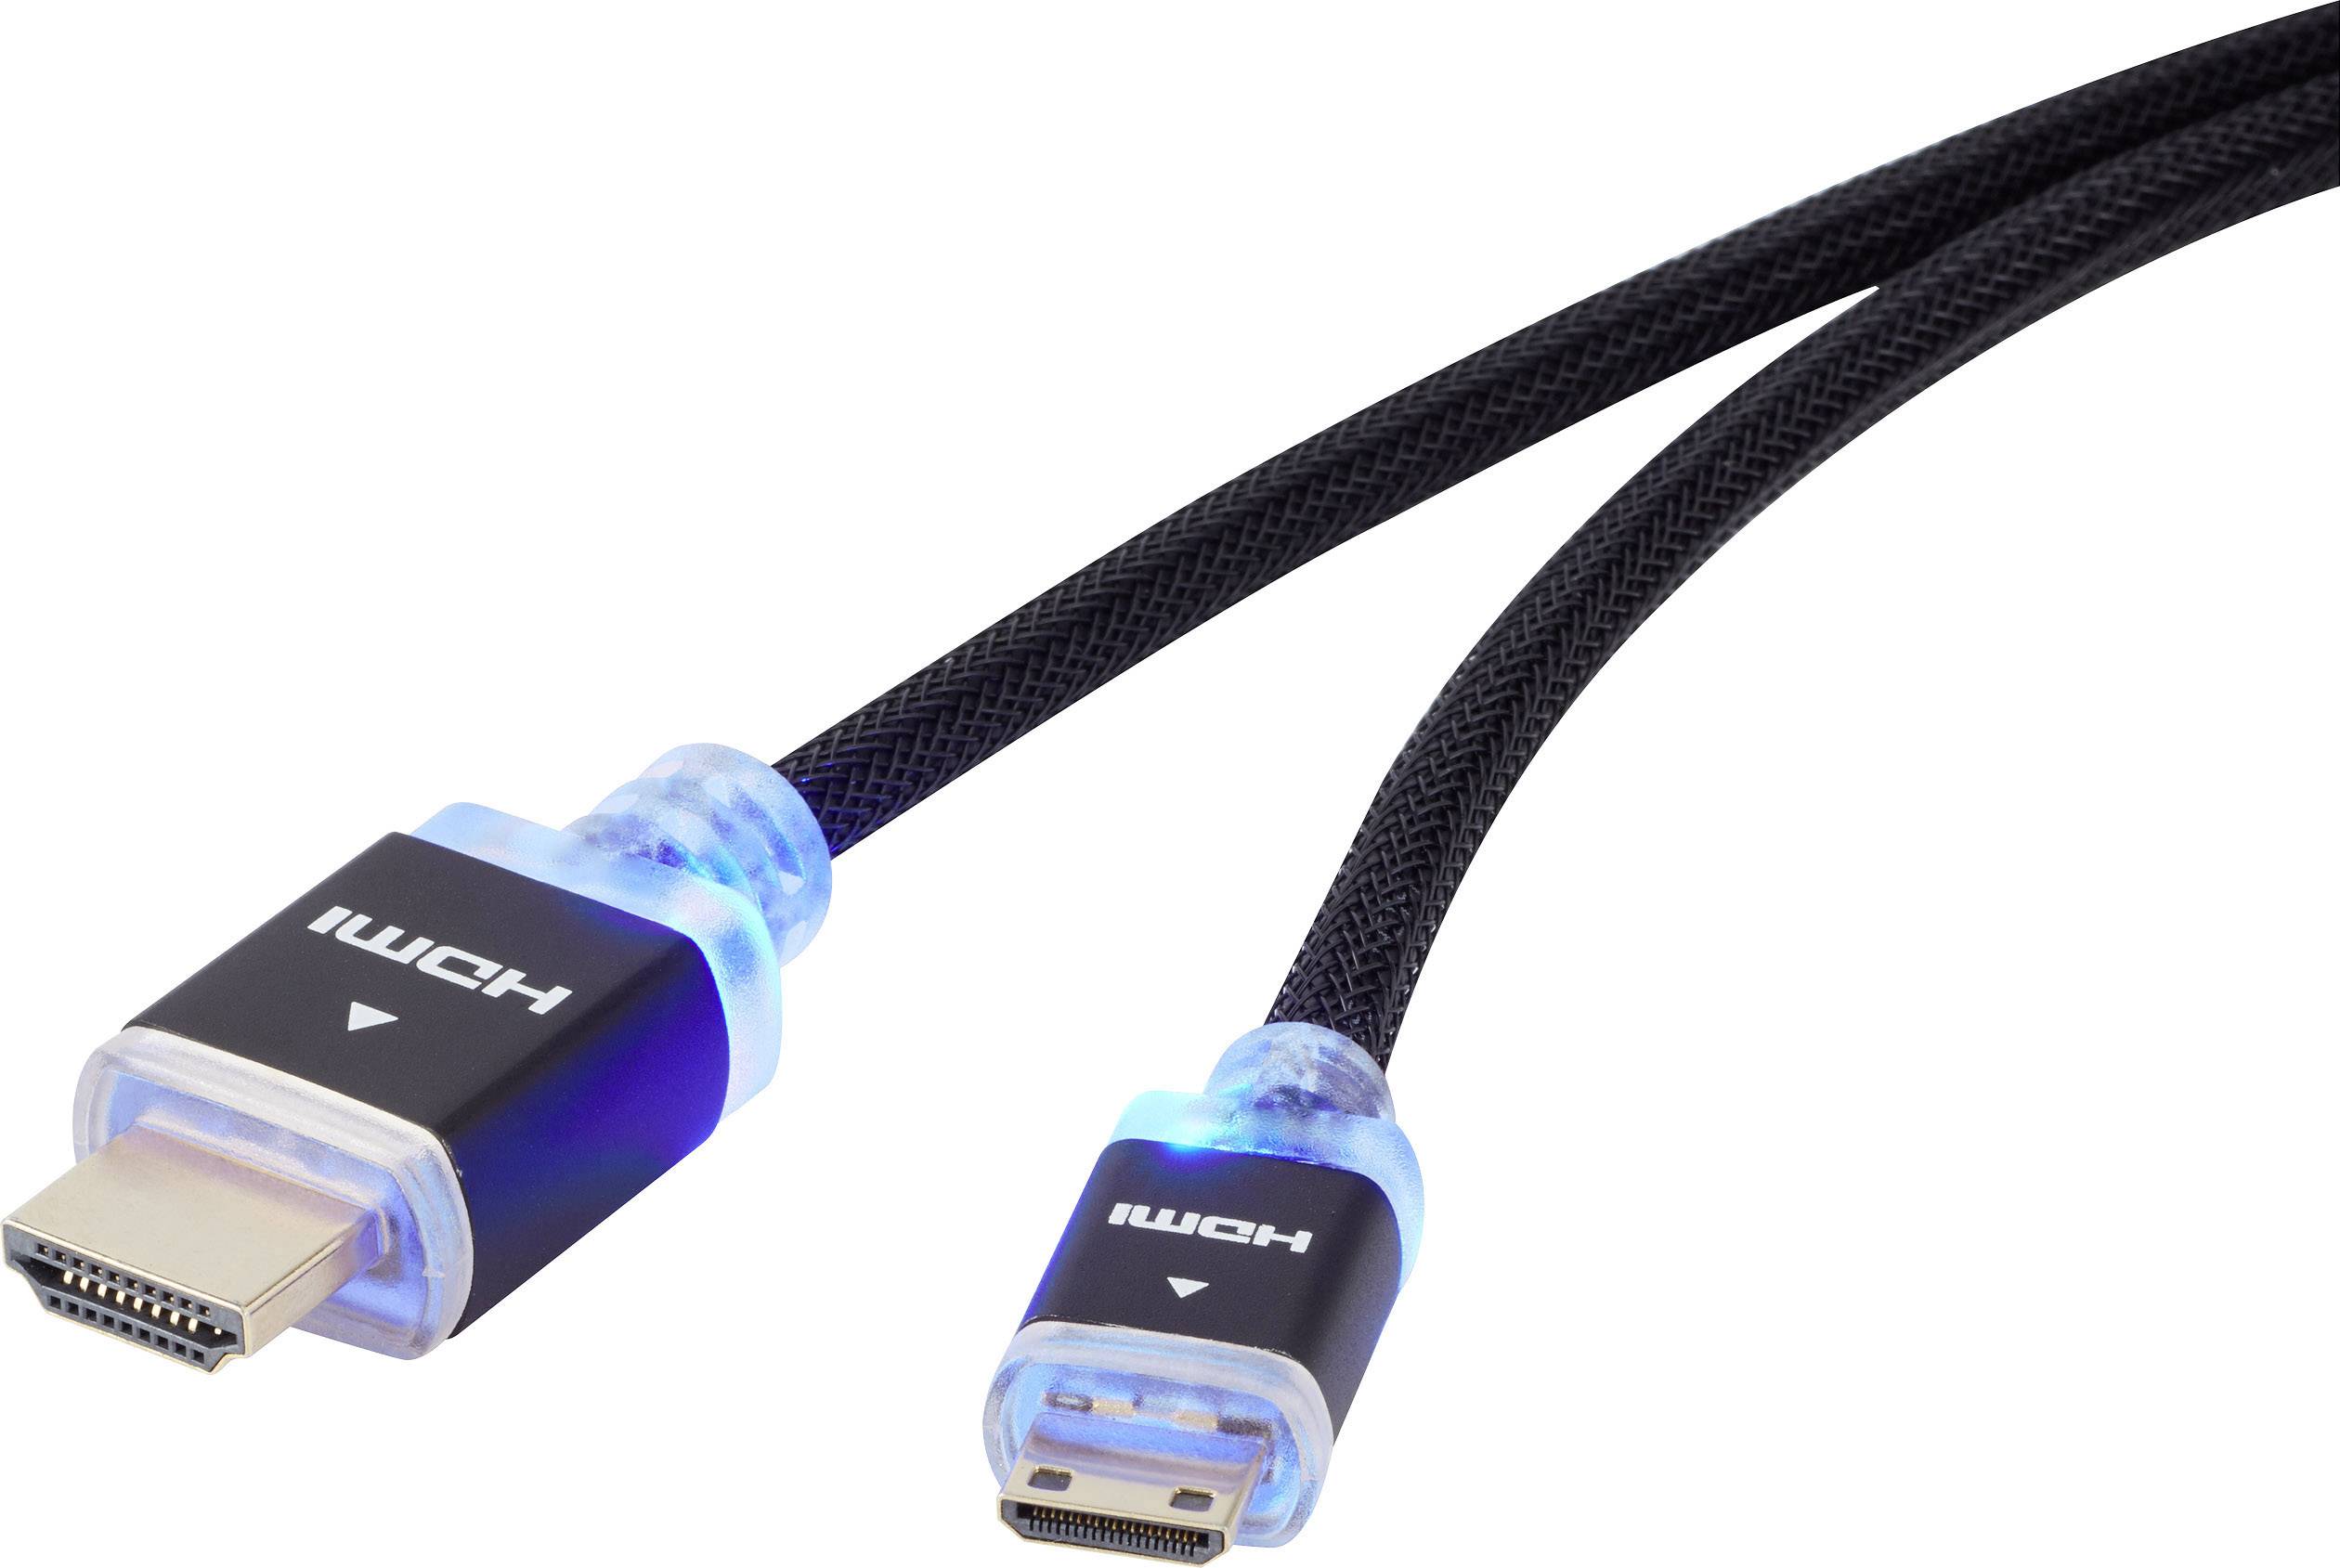 CONRAD HDMI Anschlusskabel [1x HDMI-Stecker - 1x HDMI-Stecker C Mini] 1.50 m Schwarz SpeaKa Professi